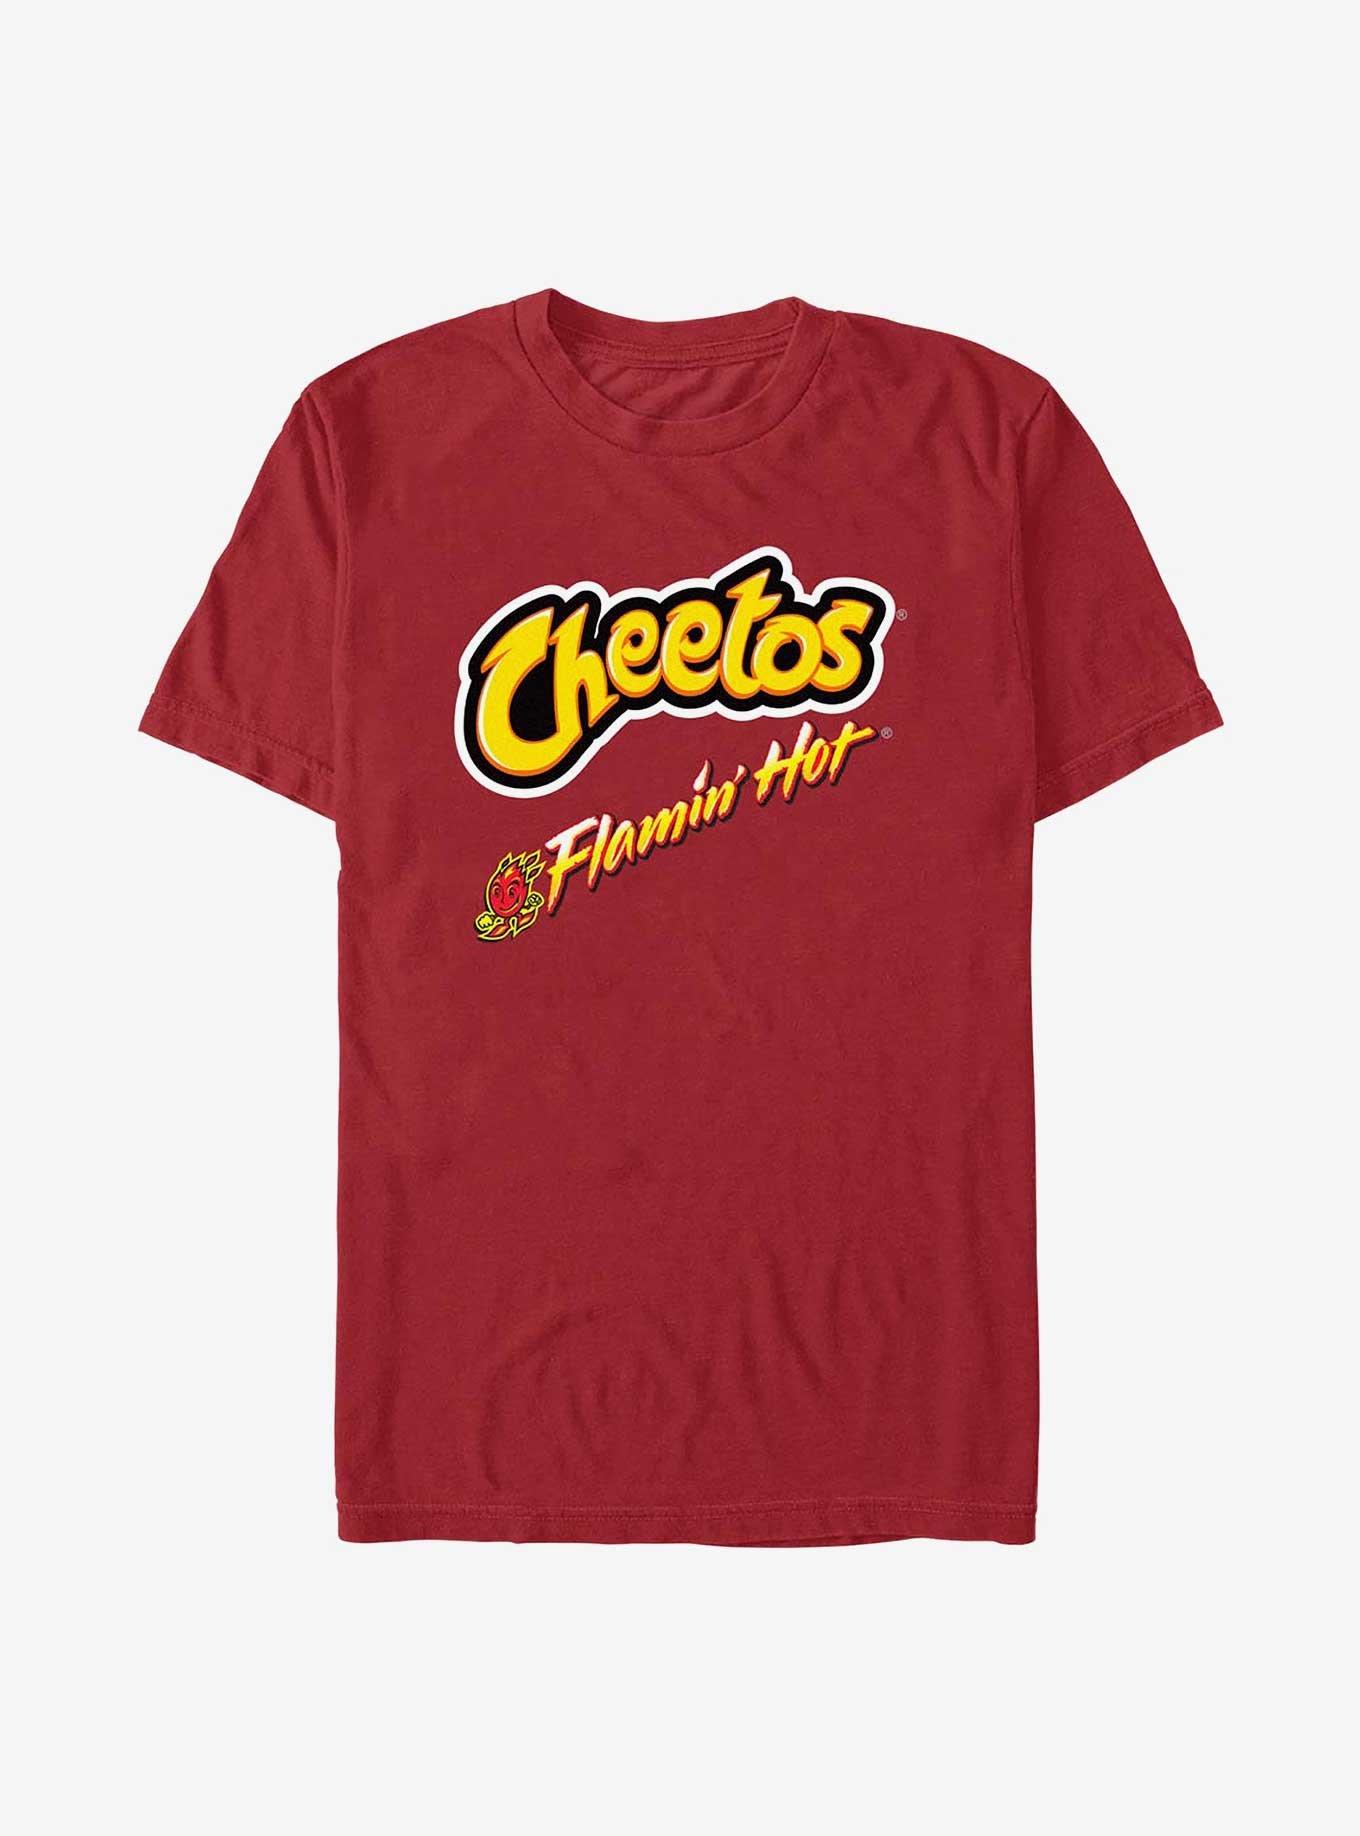 Cheetos Flamin Hot Fires T-Shirt, CARDINAL, hi-res